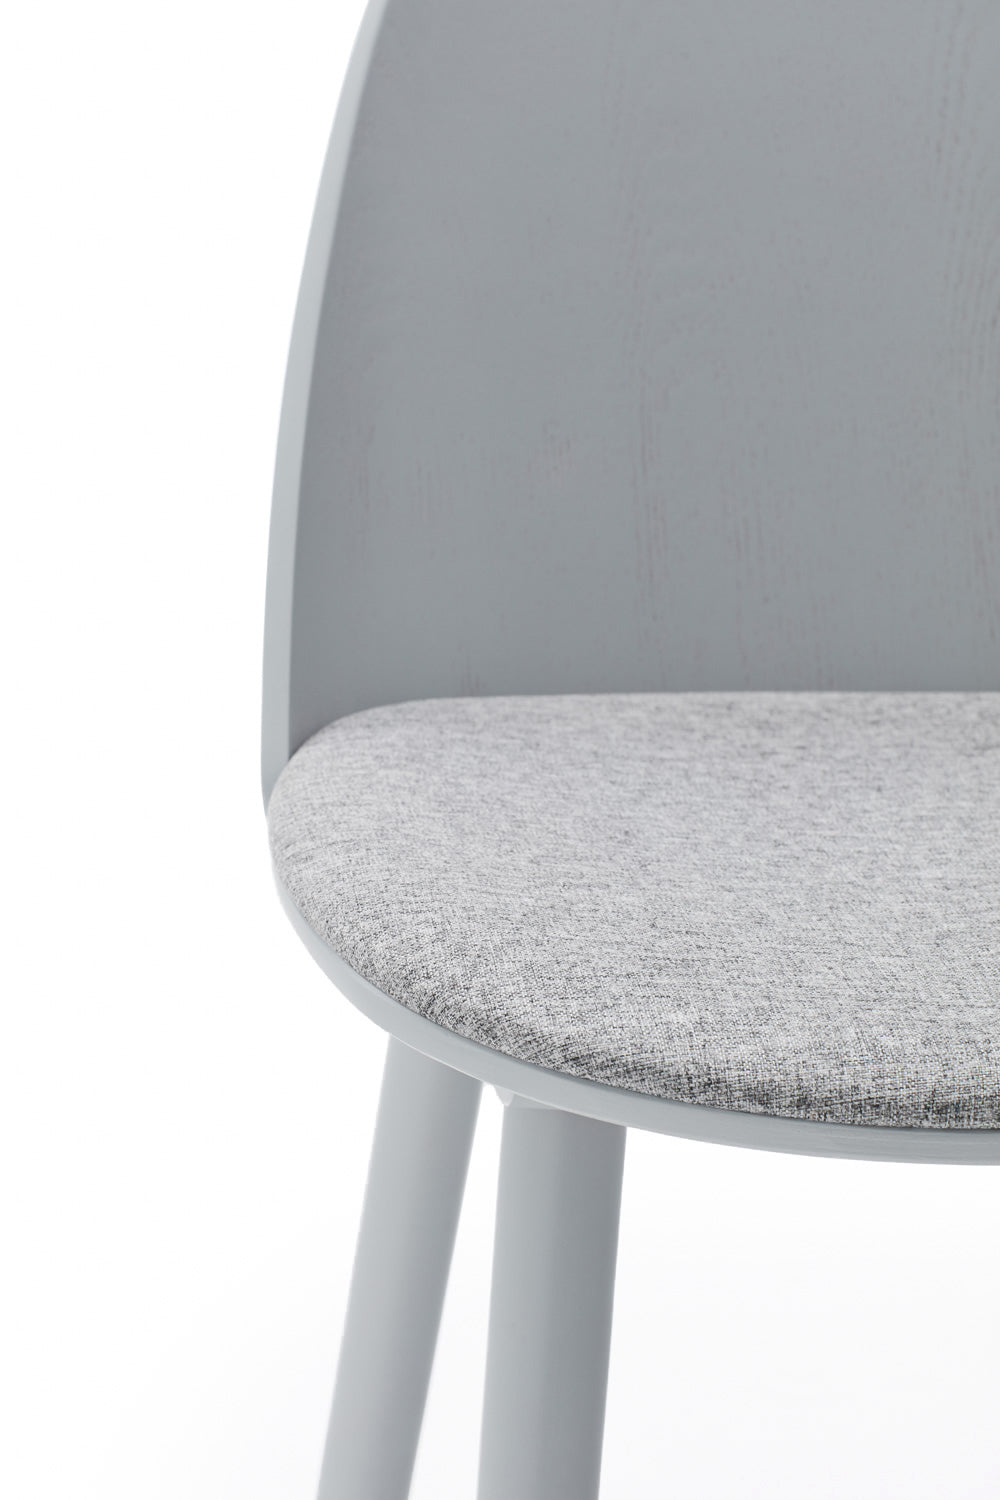 UMA chair light grey